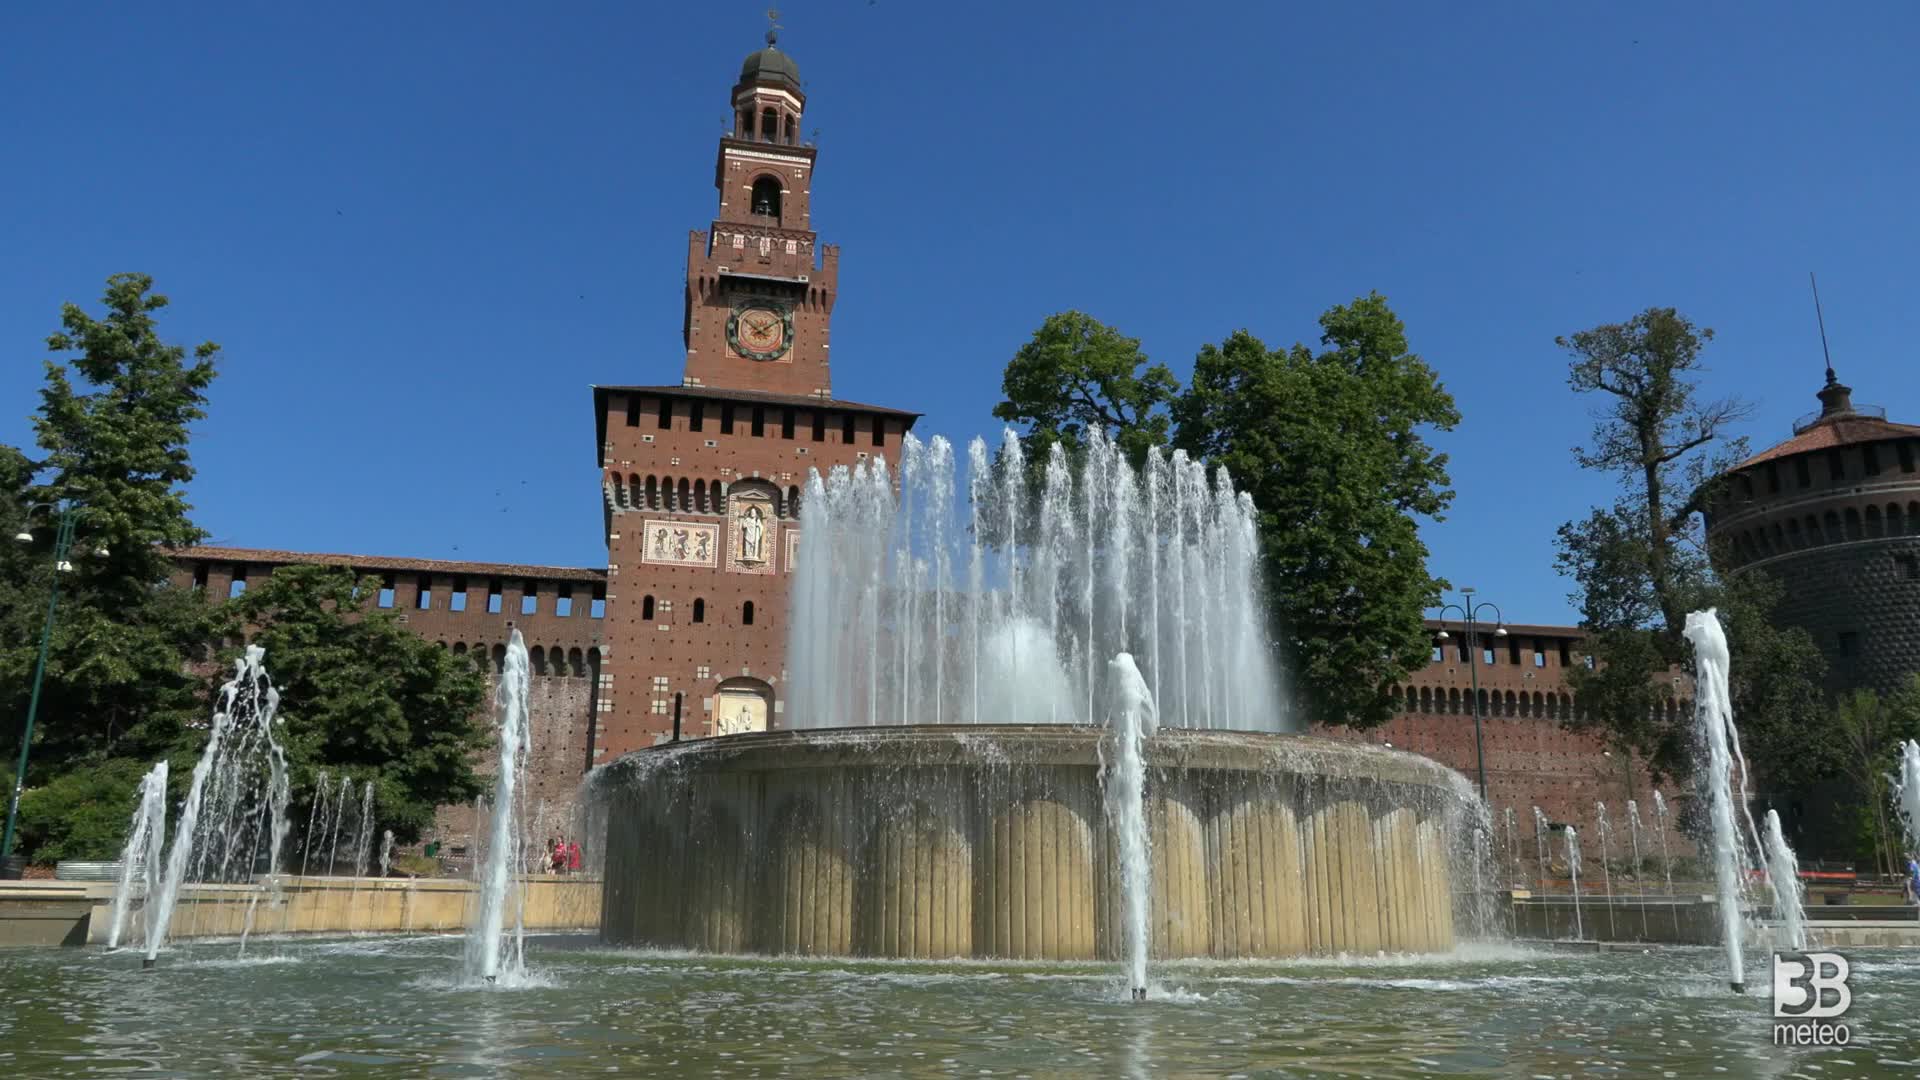 Milano fronteggia la siccit?: atteso spegnimento fontane